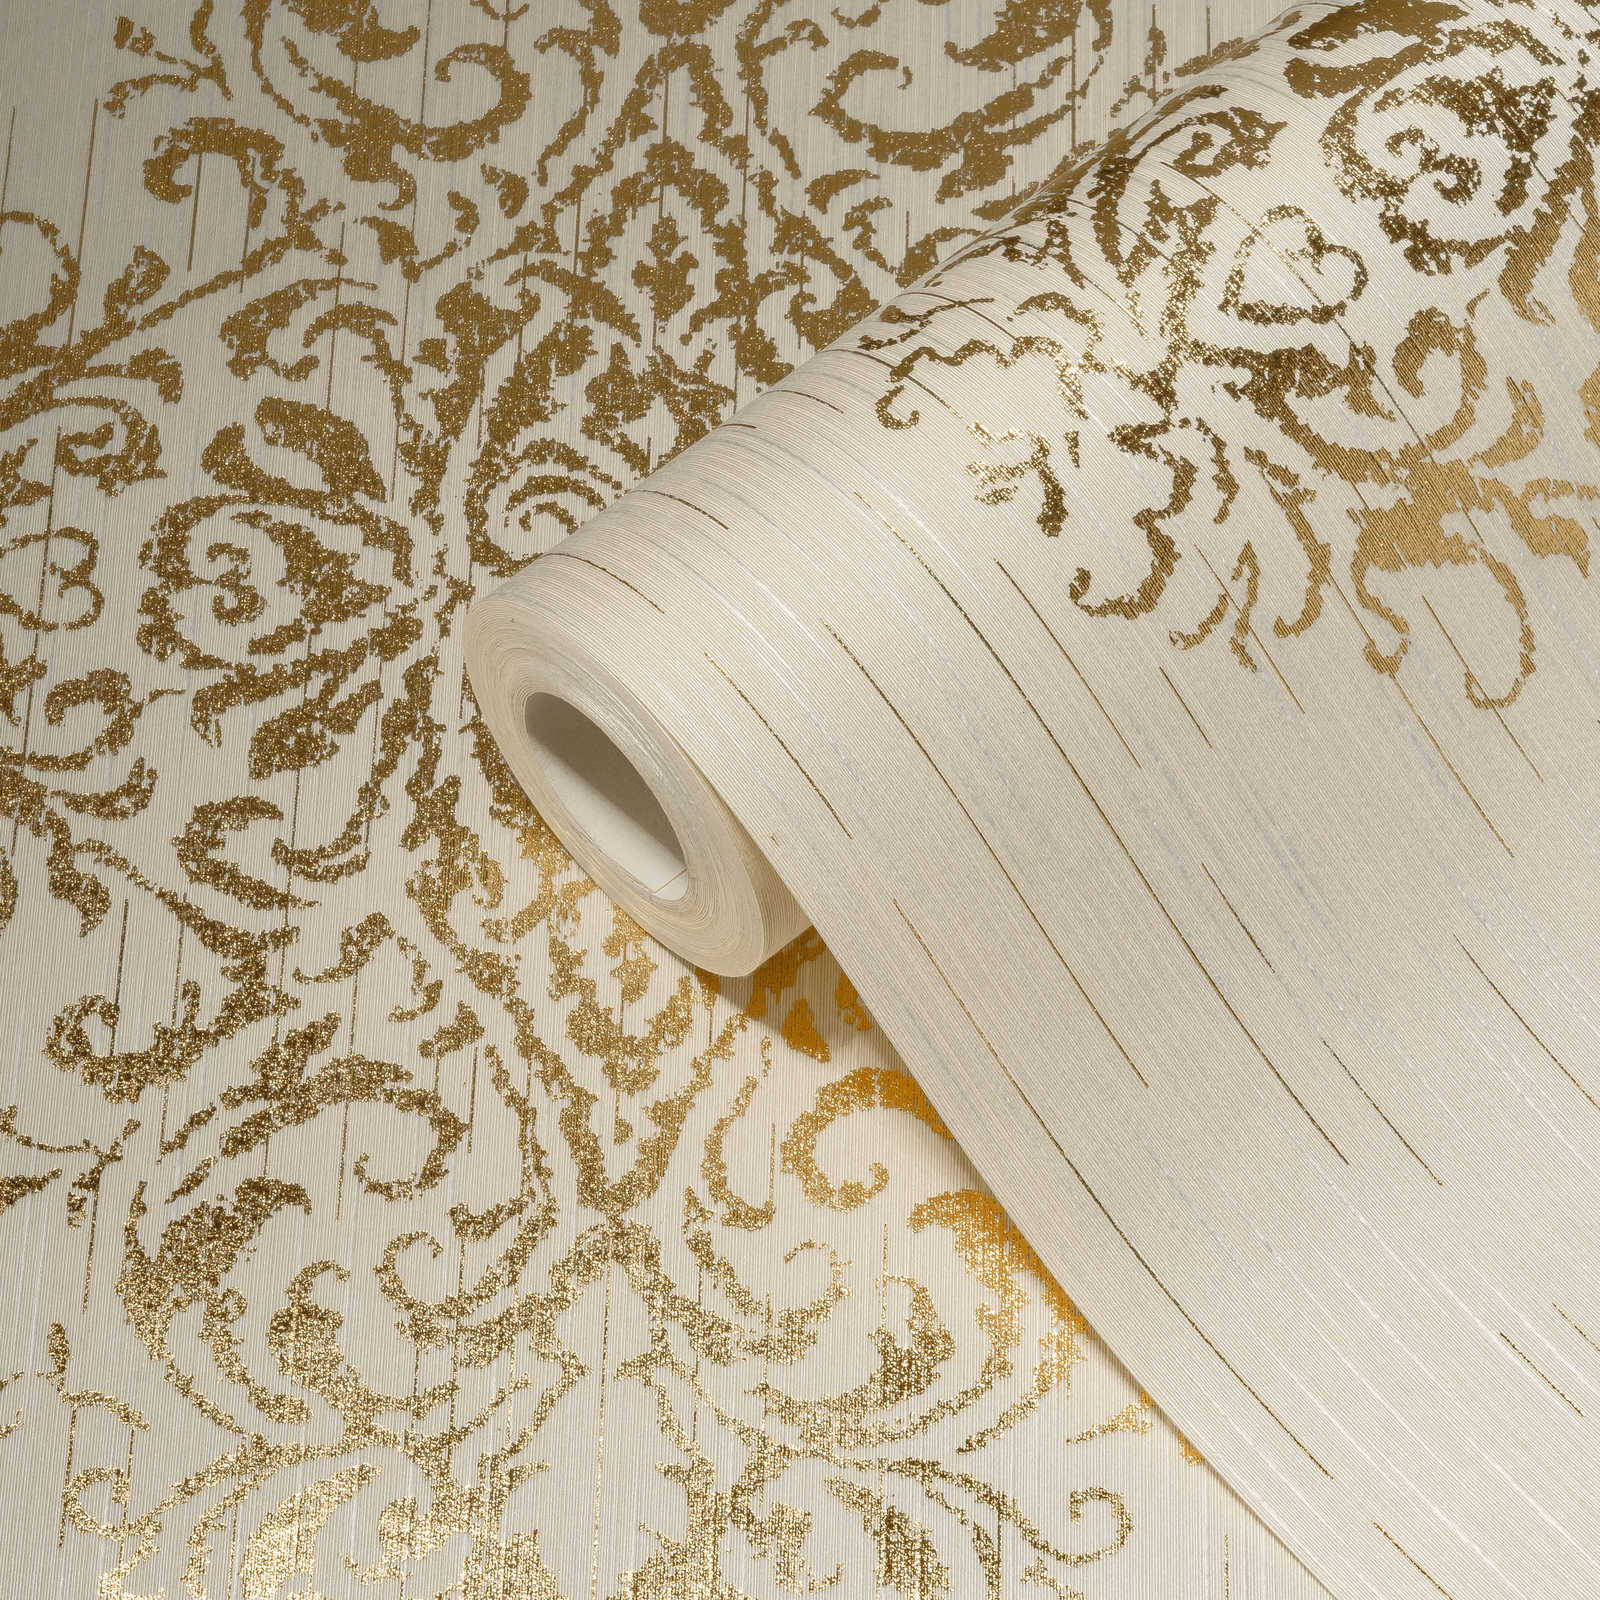             Papier peint ornemental avec effet métallique, look usé - crème, or
        